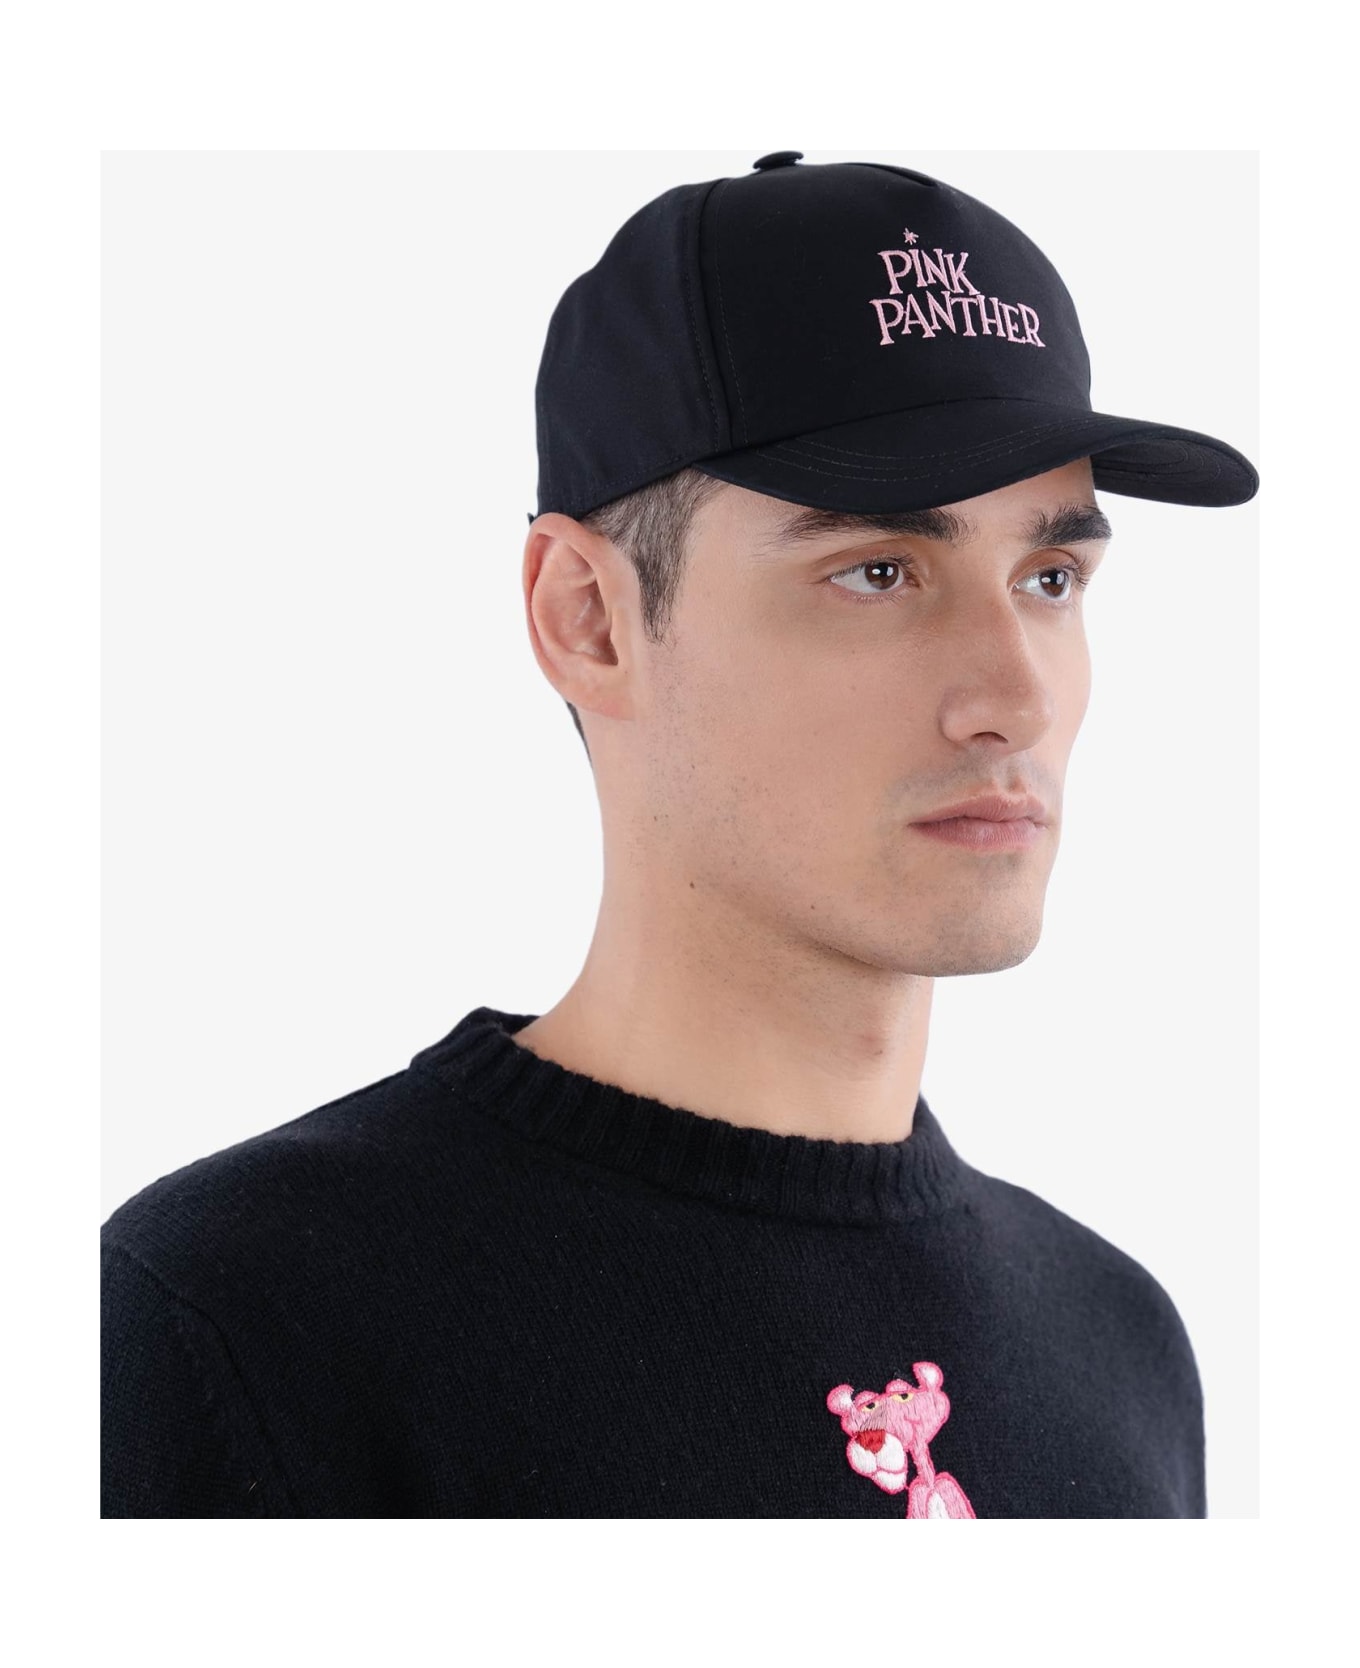 Larusmiani Baseball Cap 'pink Panther' Hat - Black